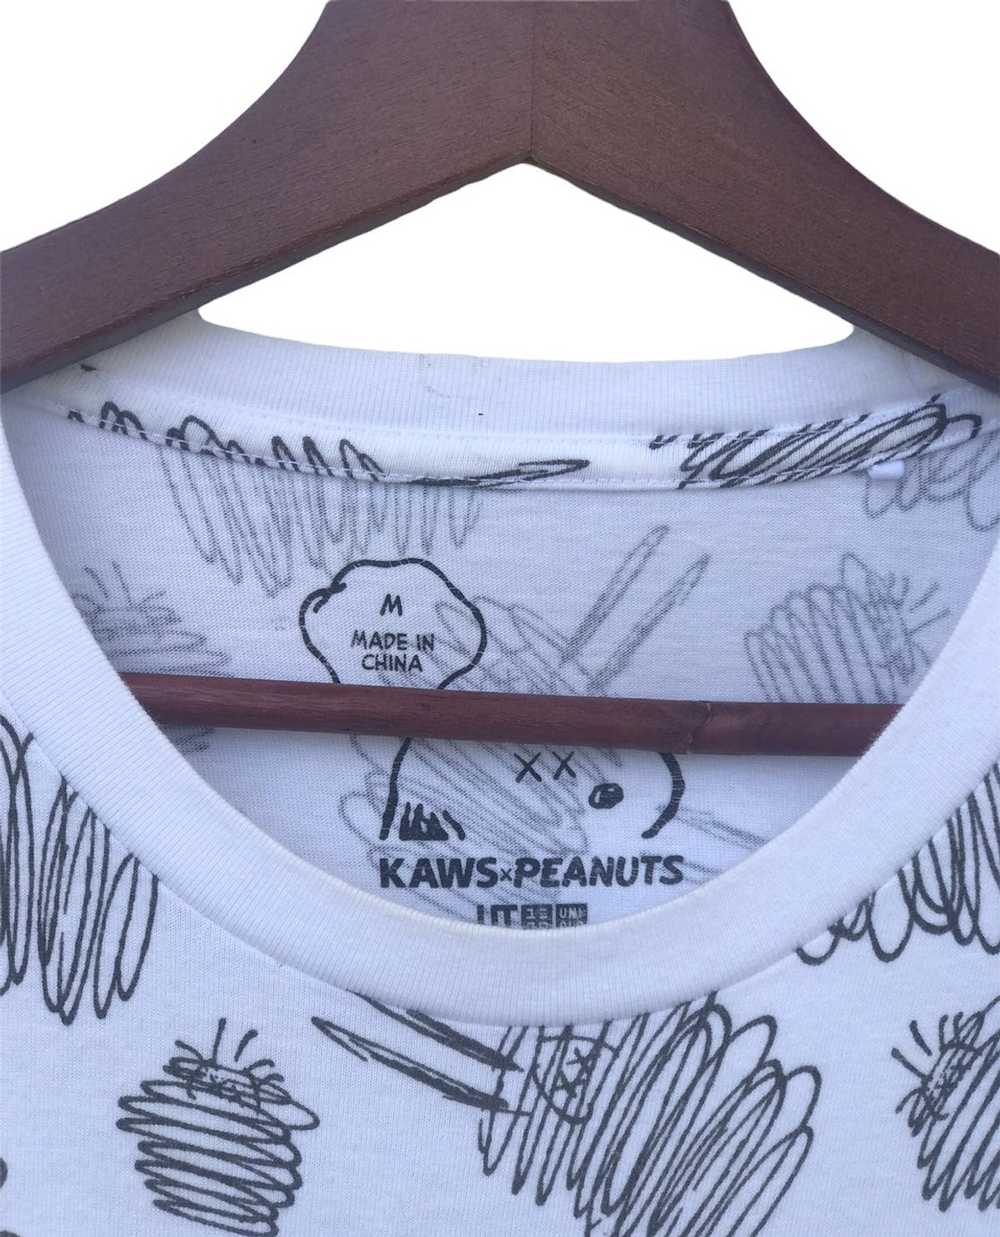 Kaws × Peanuts Shirt Kaws X Peanuts by Uniqlo - image 3